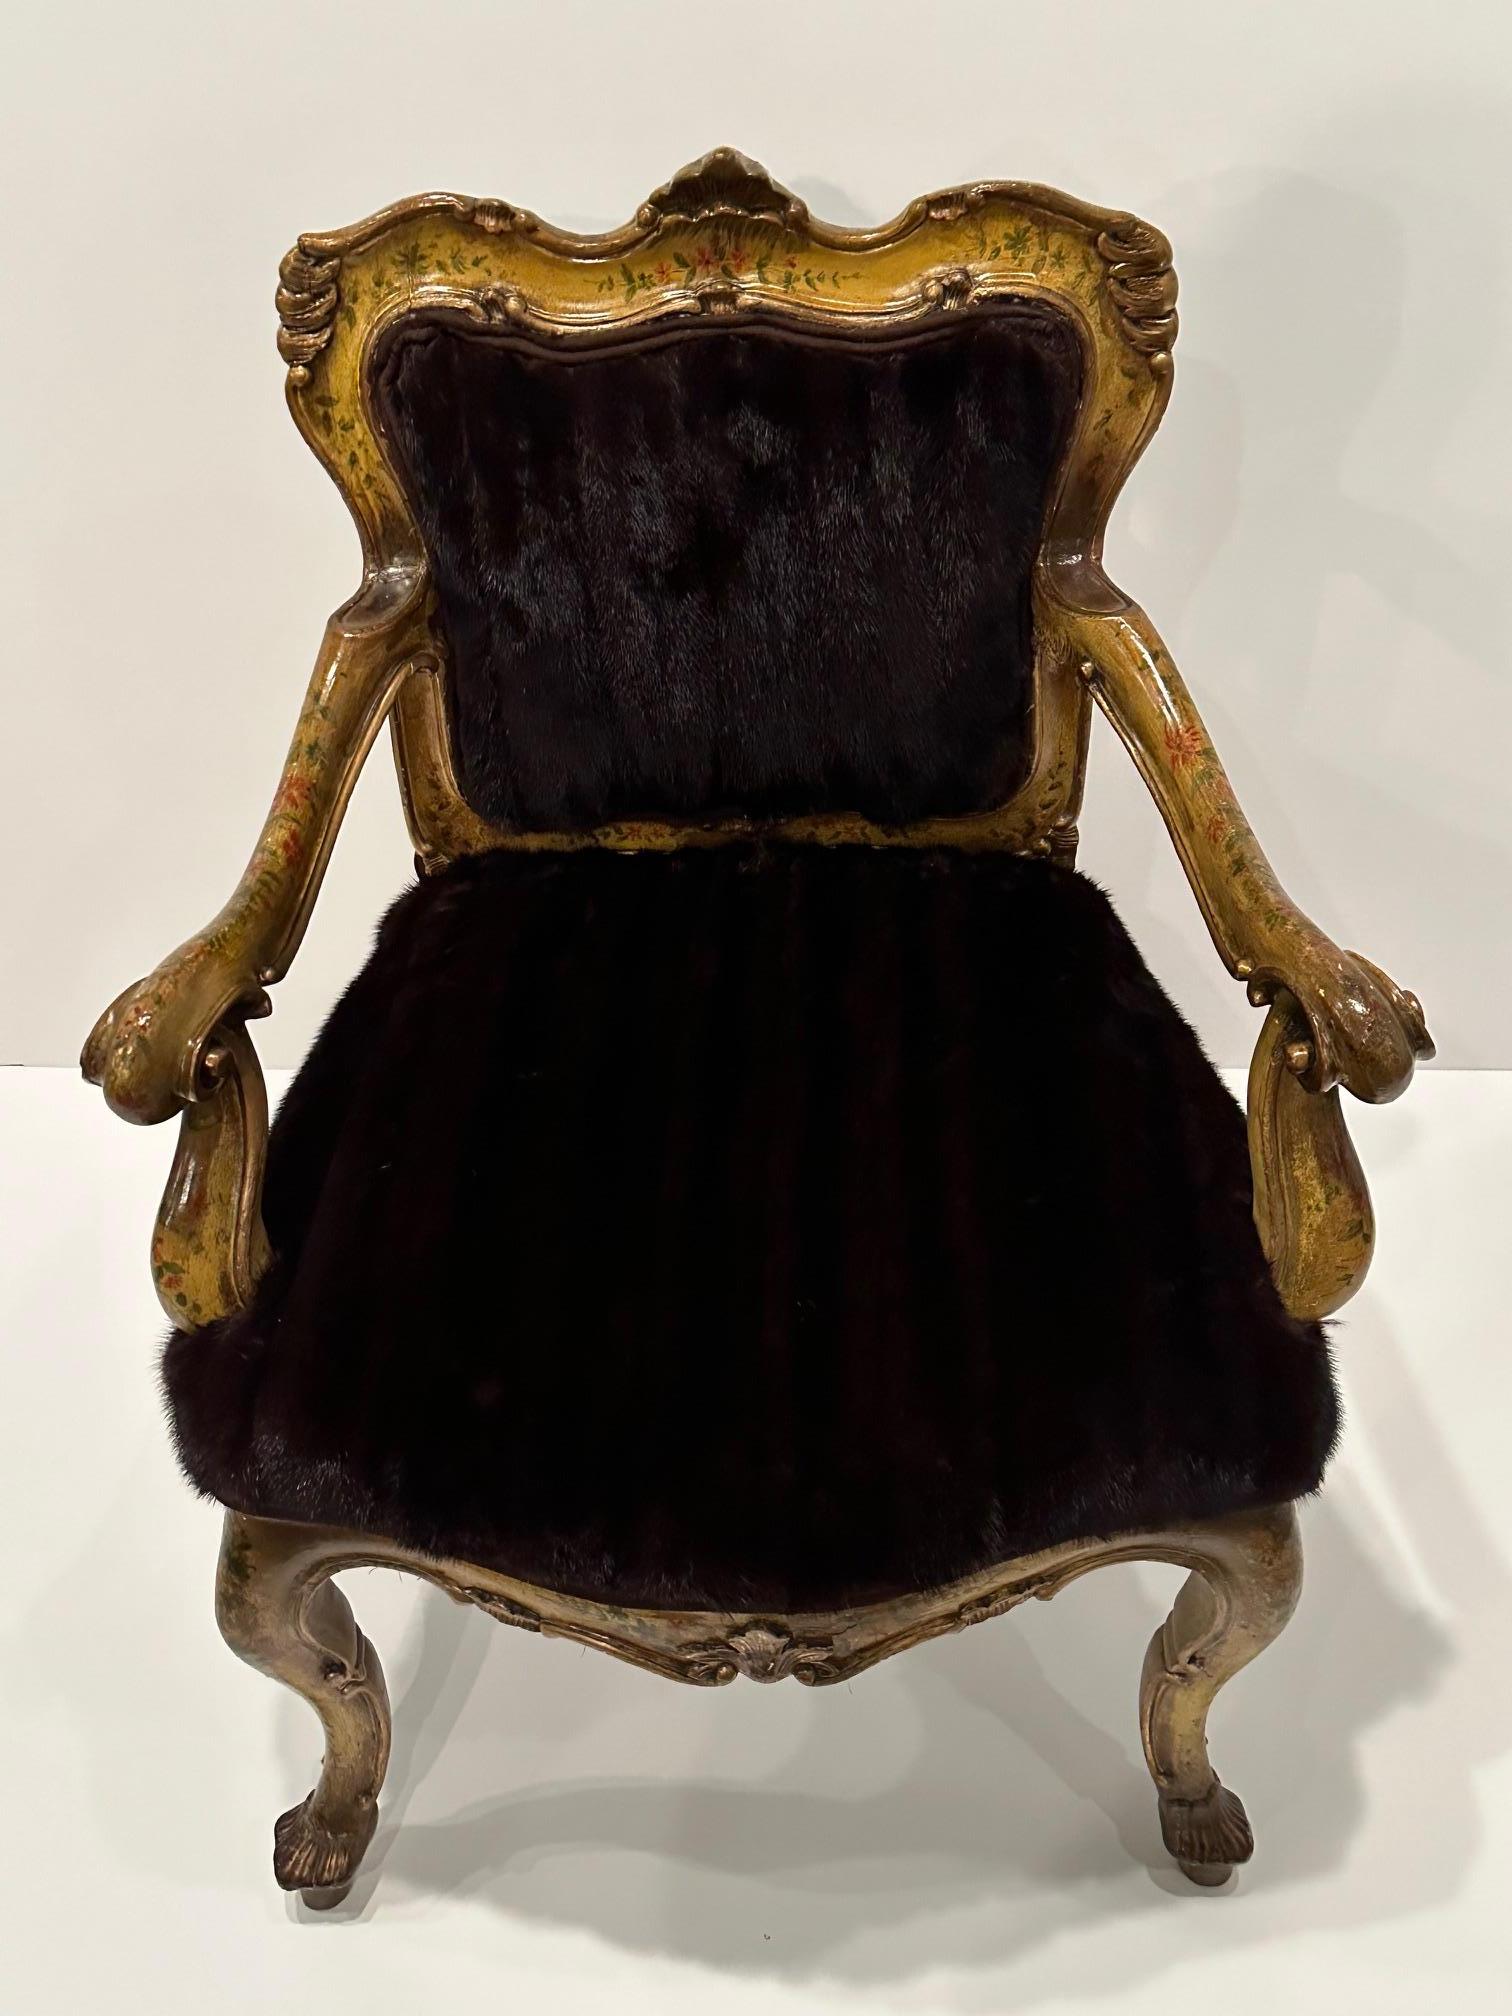 Dekadent luxuriöser italienischer vintage venezianischer Sessel mit kunstvoller Dekoration und neu gepolstert mit echtem Nerzfell.
Armhöhe 25